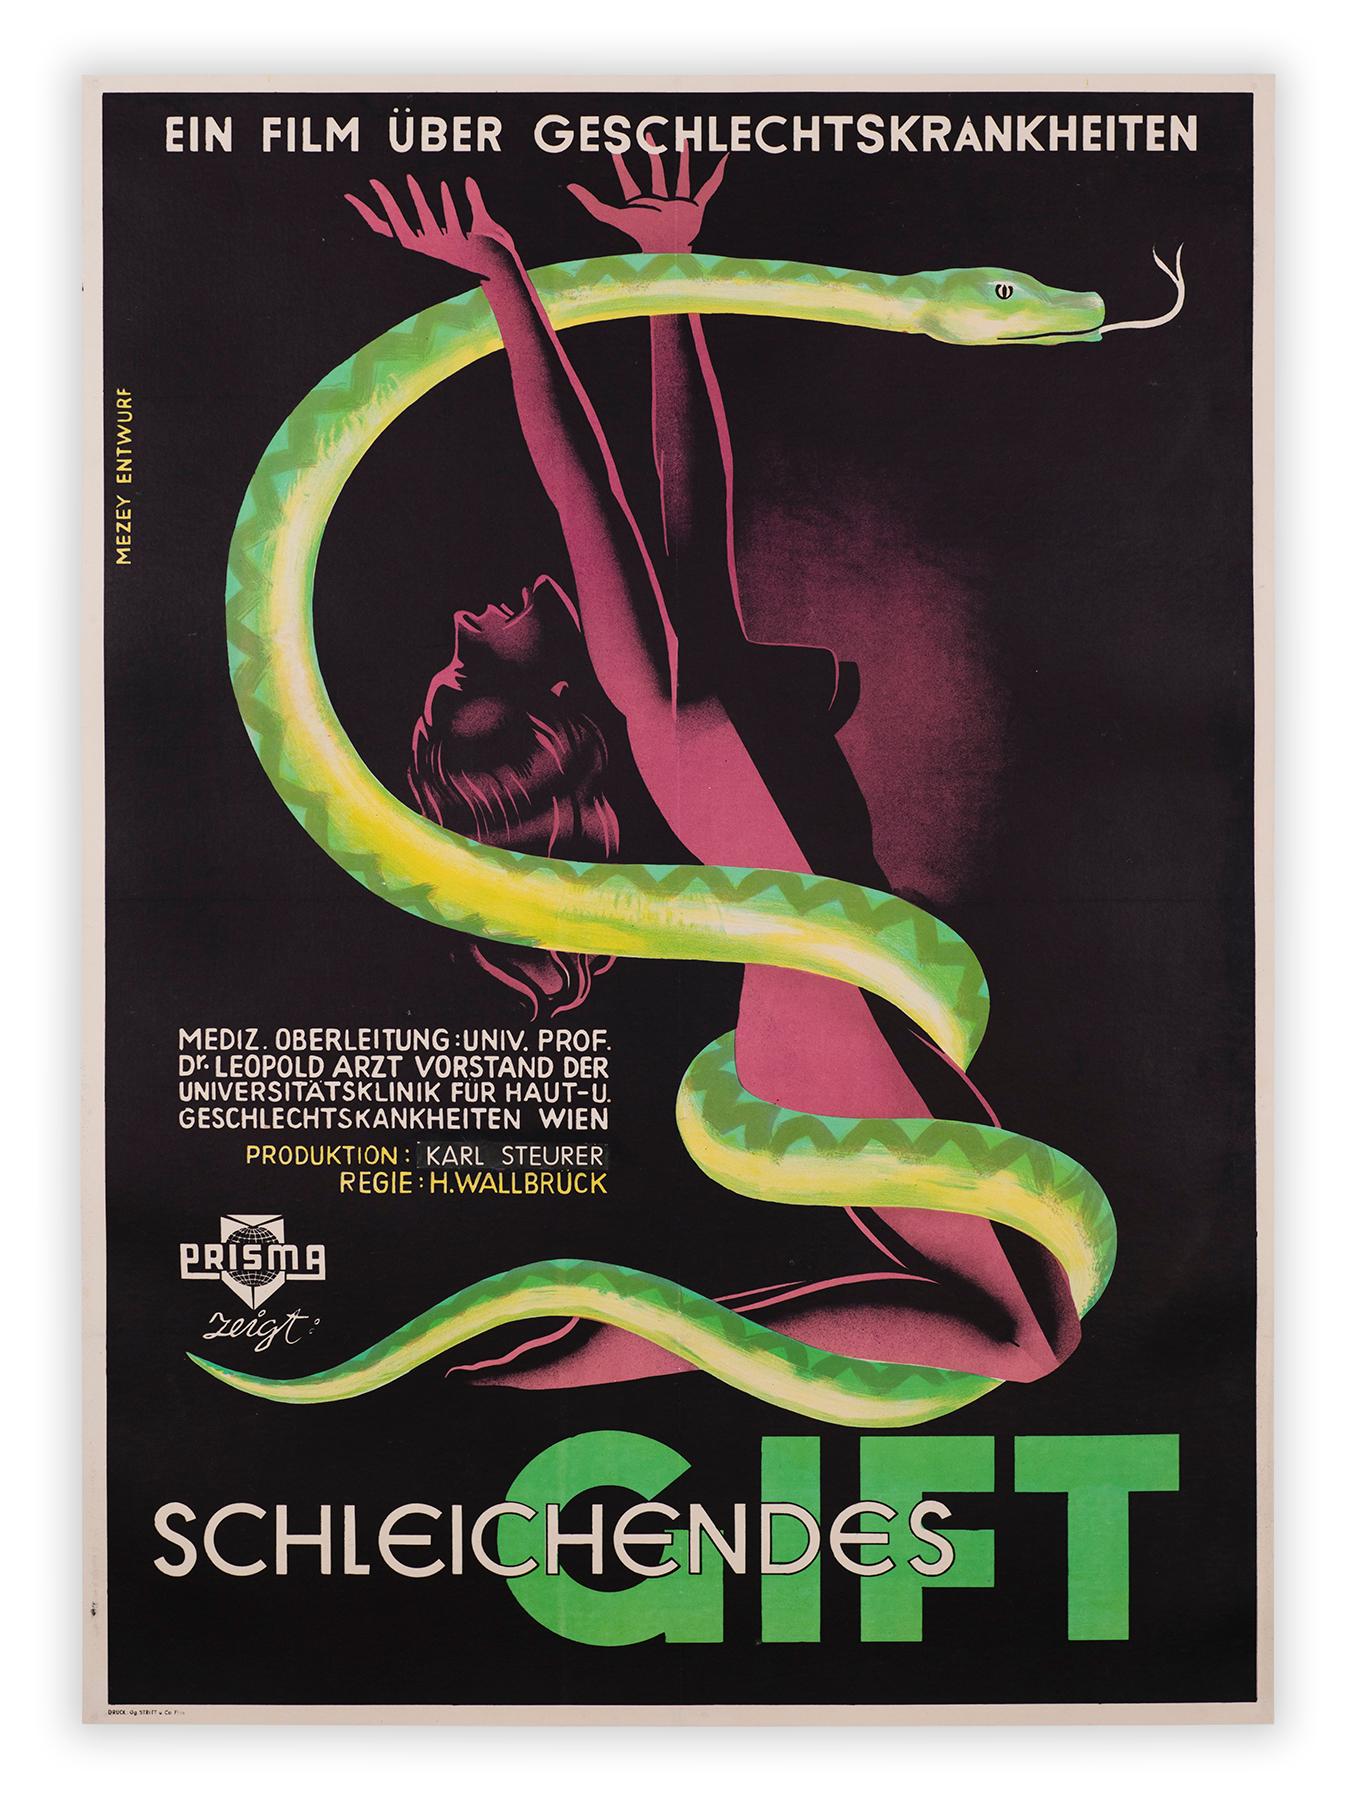 L'affiche lithographique de Gustav Mezey pour le film d'"hygiène sociale" Schleichendes Gift (traduit par Poison rampant) de Hermann Wallbrück montre une femme en détresse encerclée par un serpent prédateur. L'objectif du film était de sensibiliser